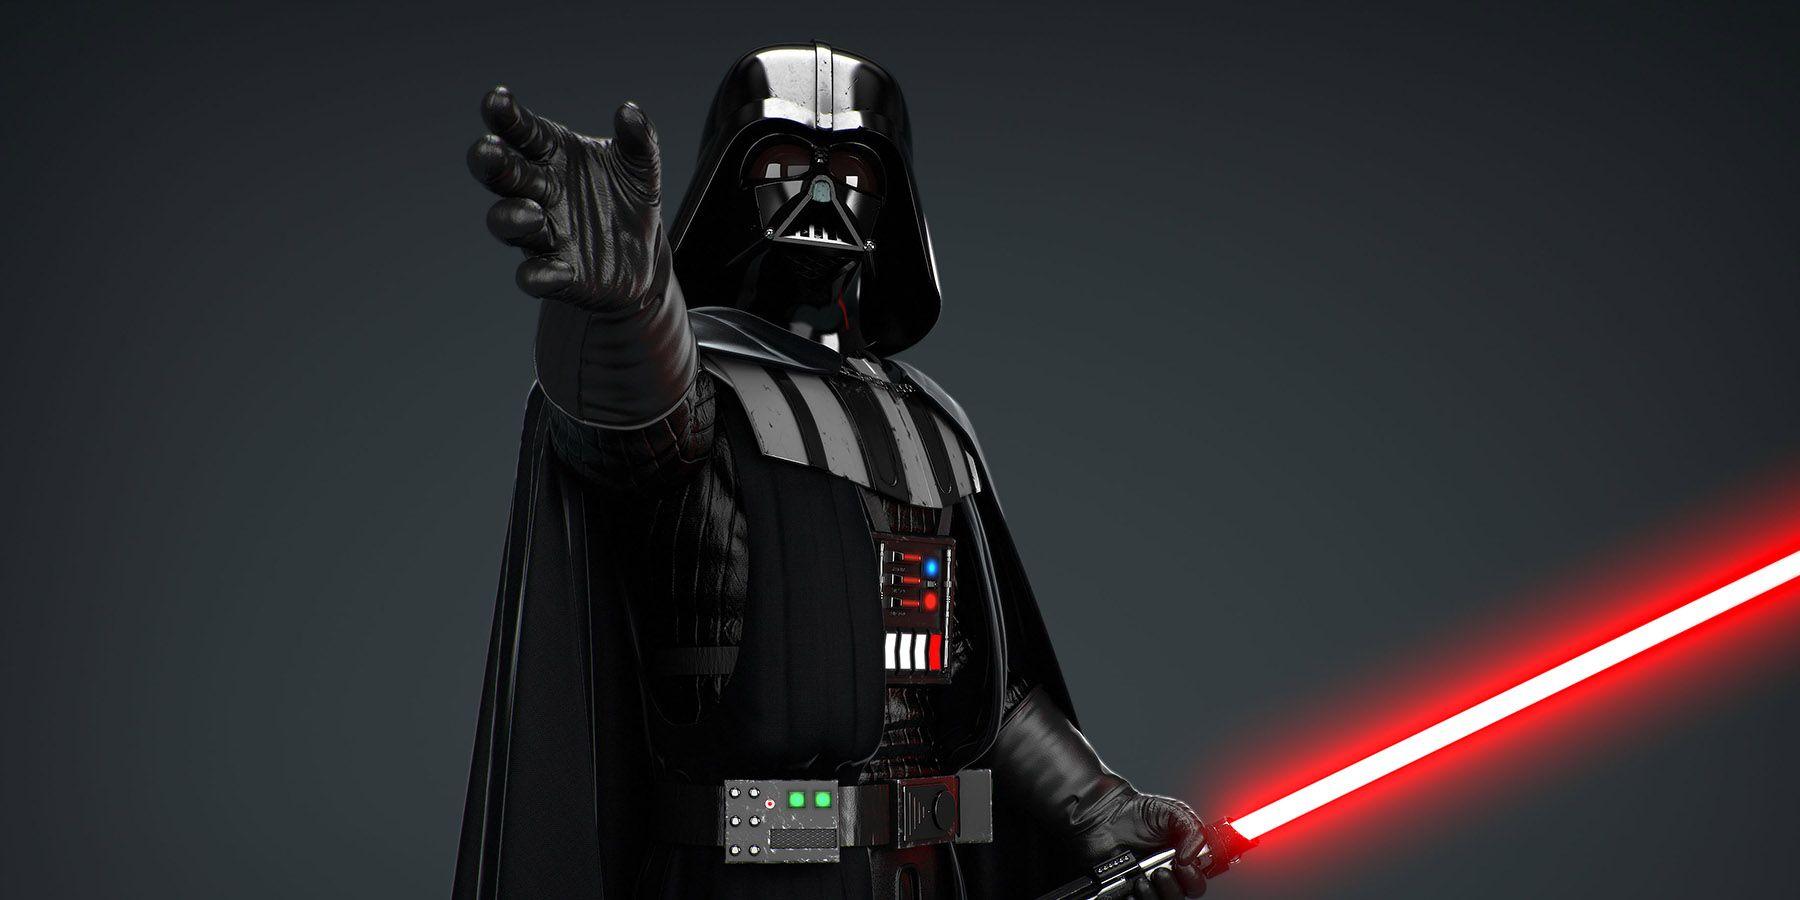 Should Darth Vader Get An Anthology Movie?